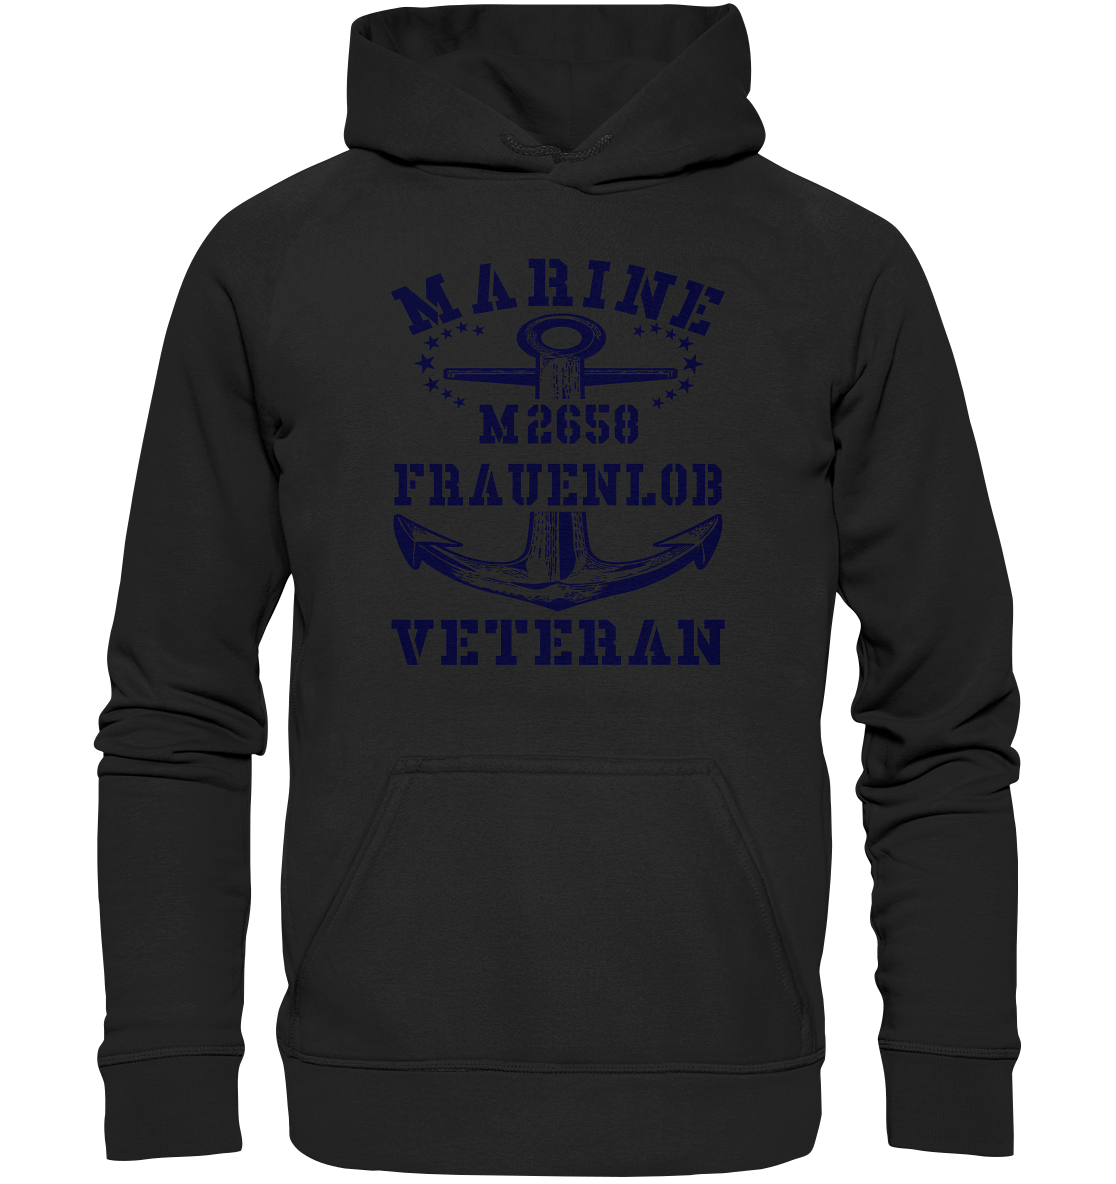 BiMi M2658 FRAUENLOB Marine Veteran - Basic Unisex Hoodie